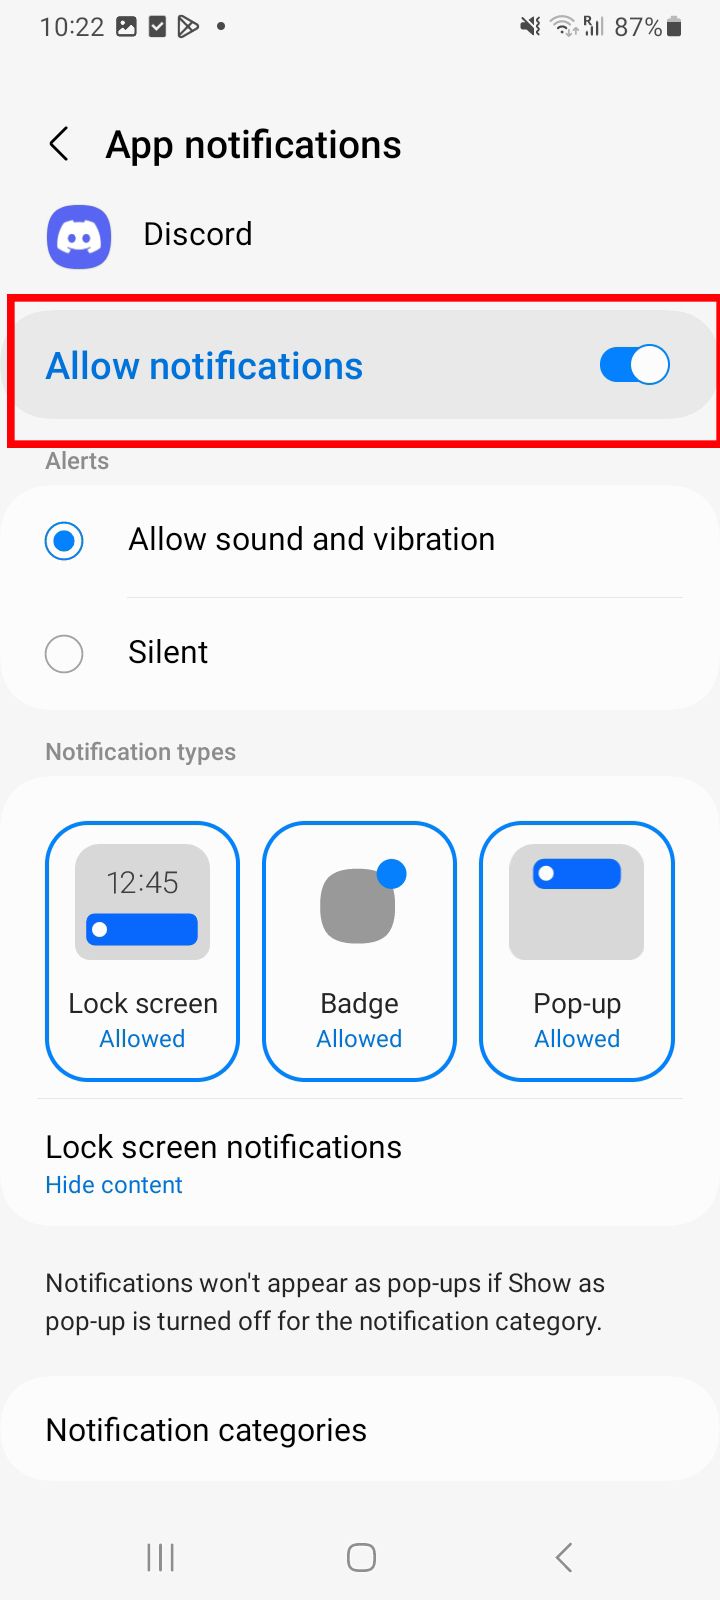   Configurações do Android mostrando notificações do aplicativo Discord ativadas com opções de estilos de alerta